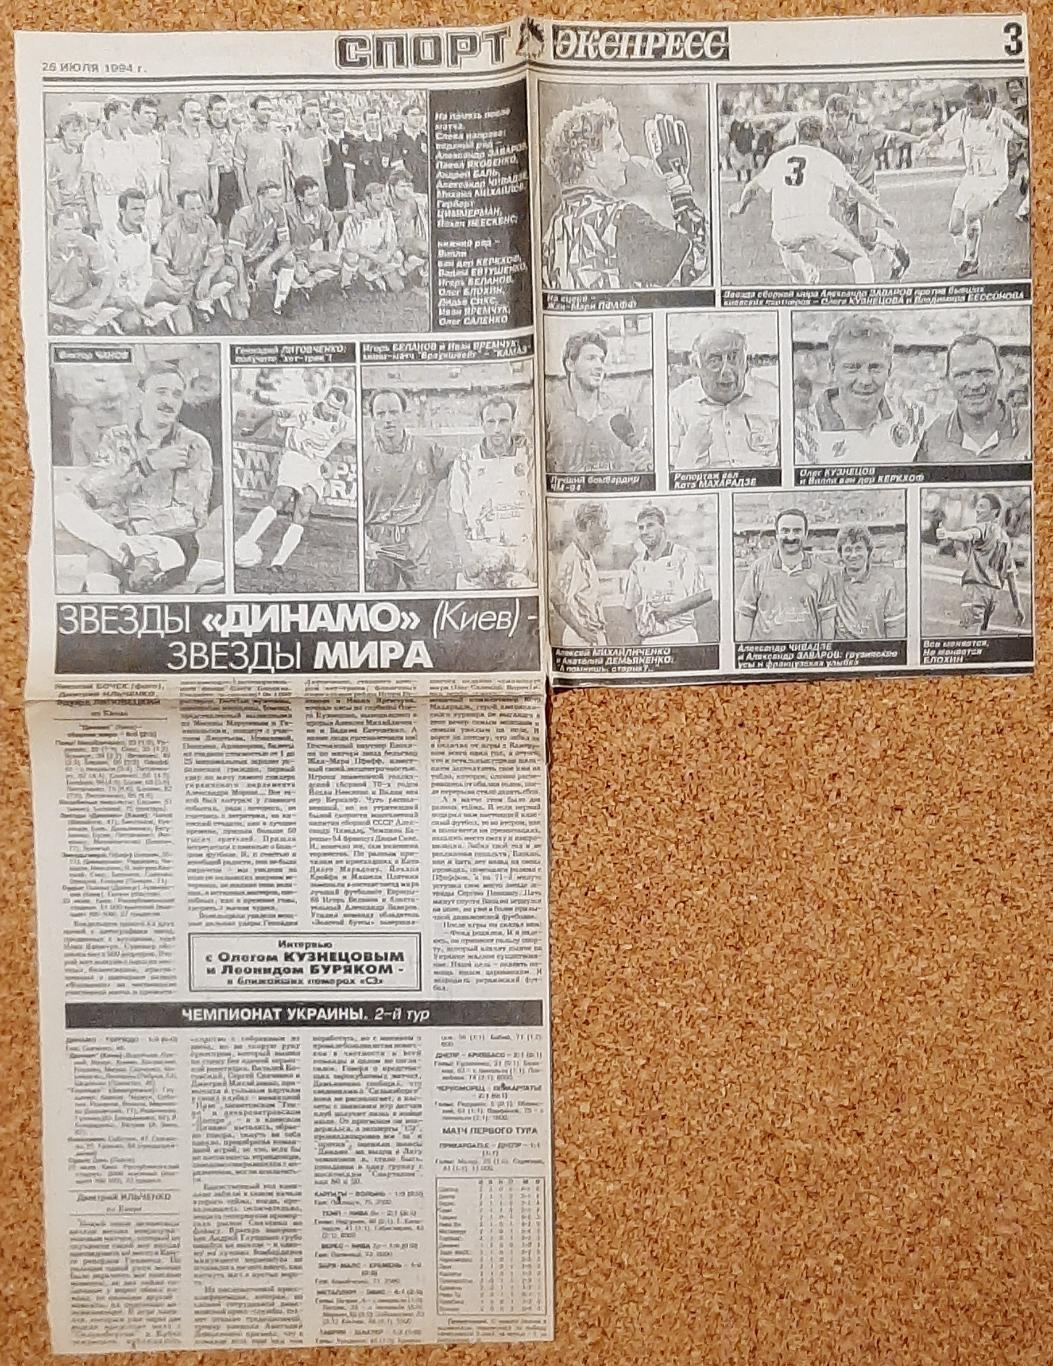 Вирізка з газети Спорт експрес 26 липня 1994 Зірки Динамо Київ-Зірки Світу 1